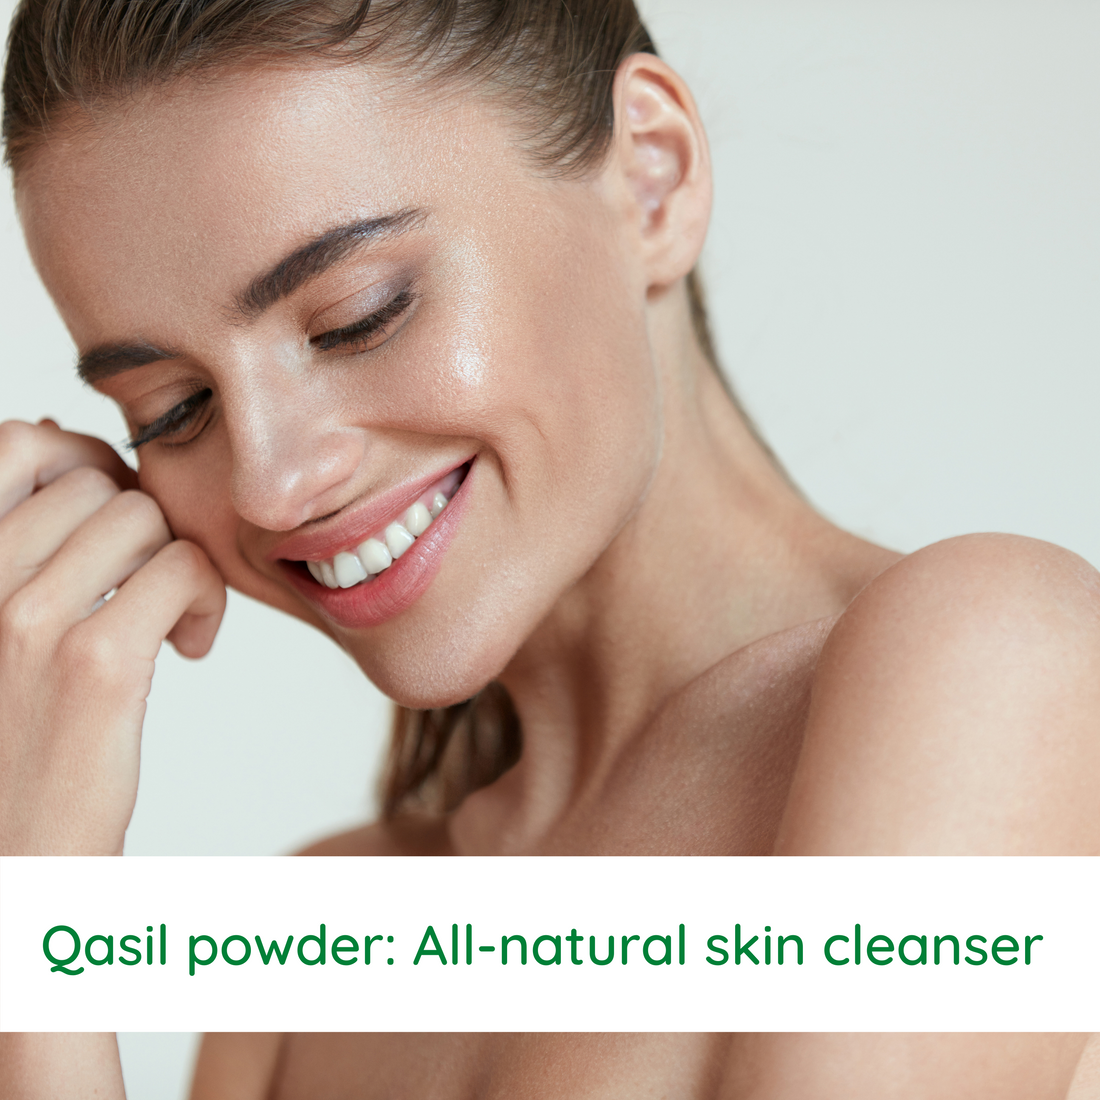 Qasil powder: All-natural skin cleanser